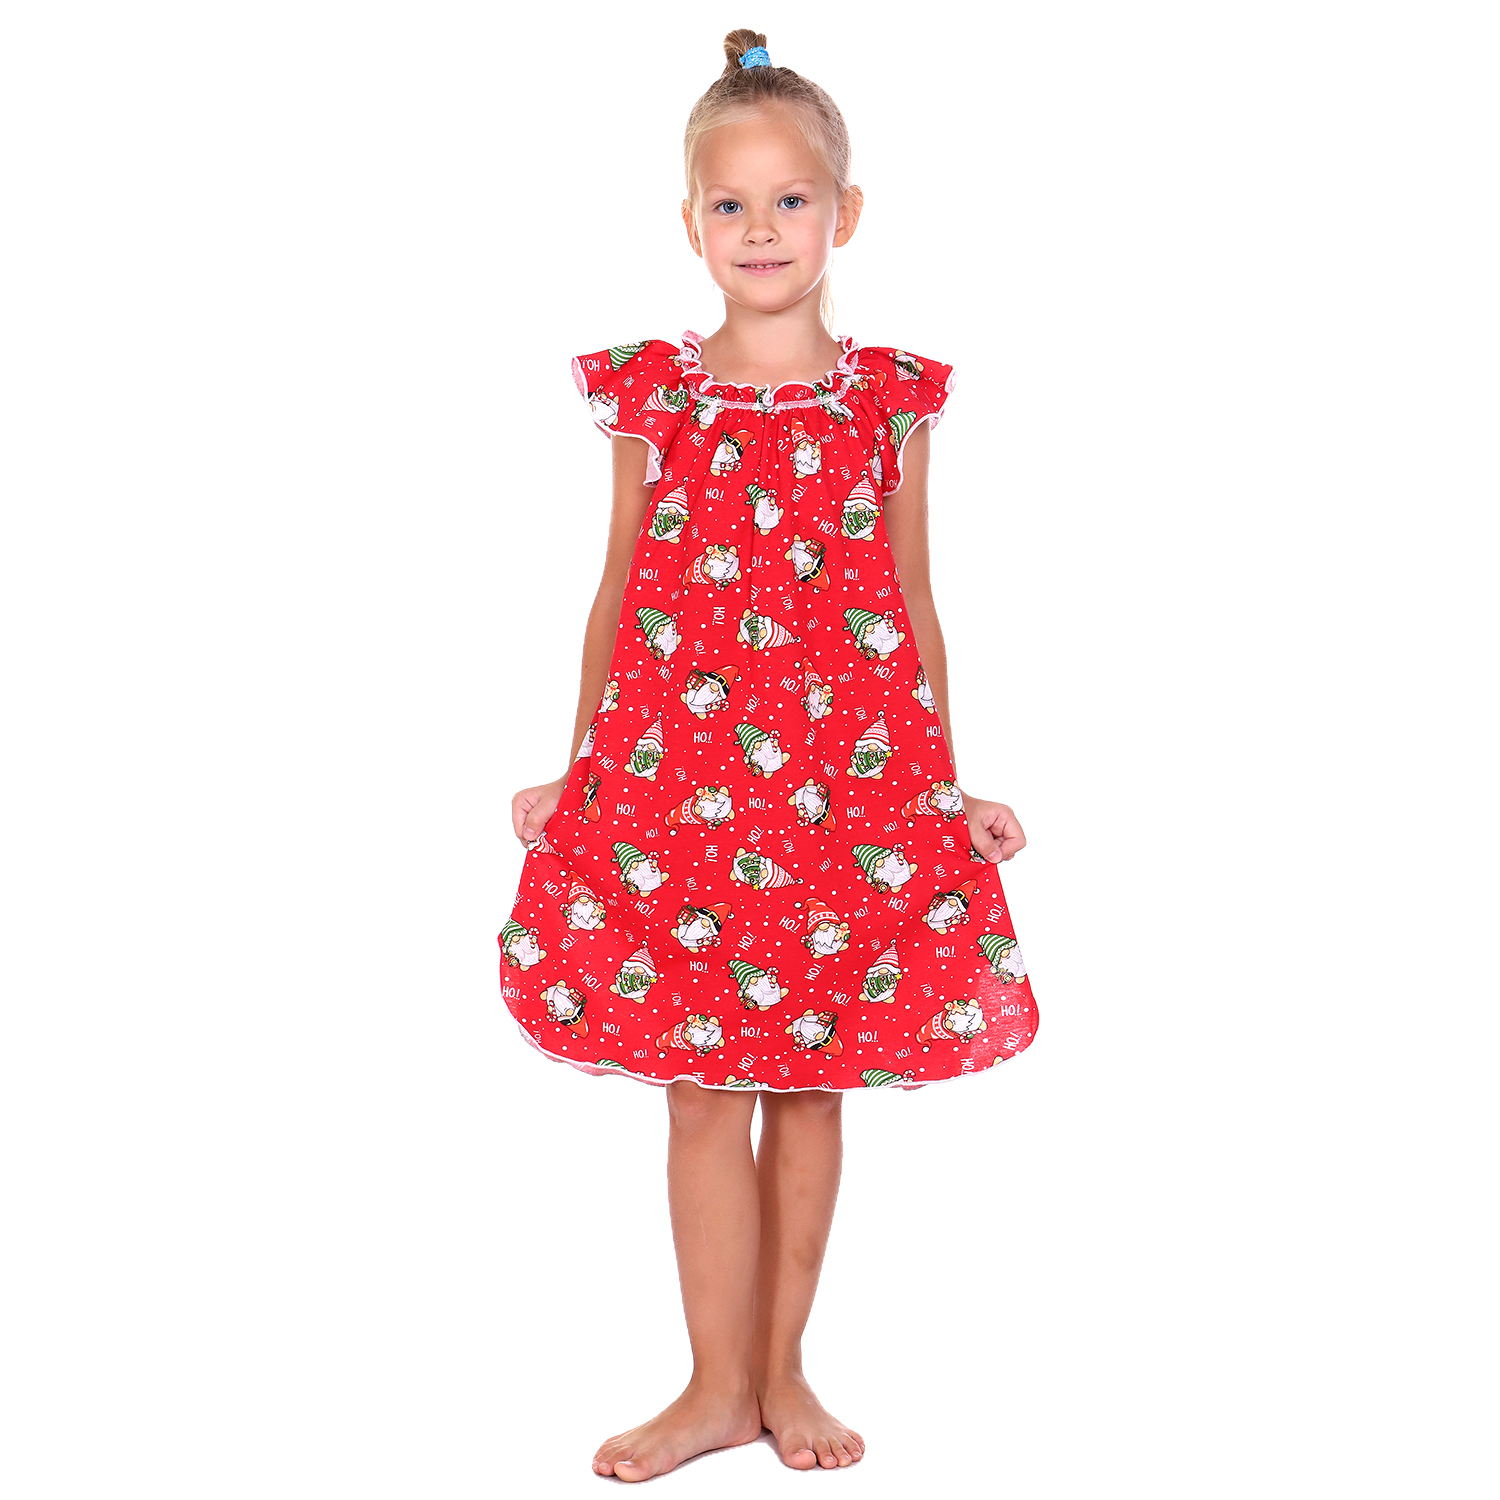 Сорочка ночная Детская Одежда 0003К/красный4 - фото 1